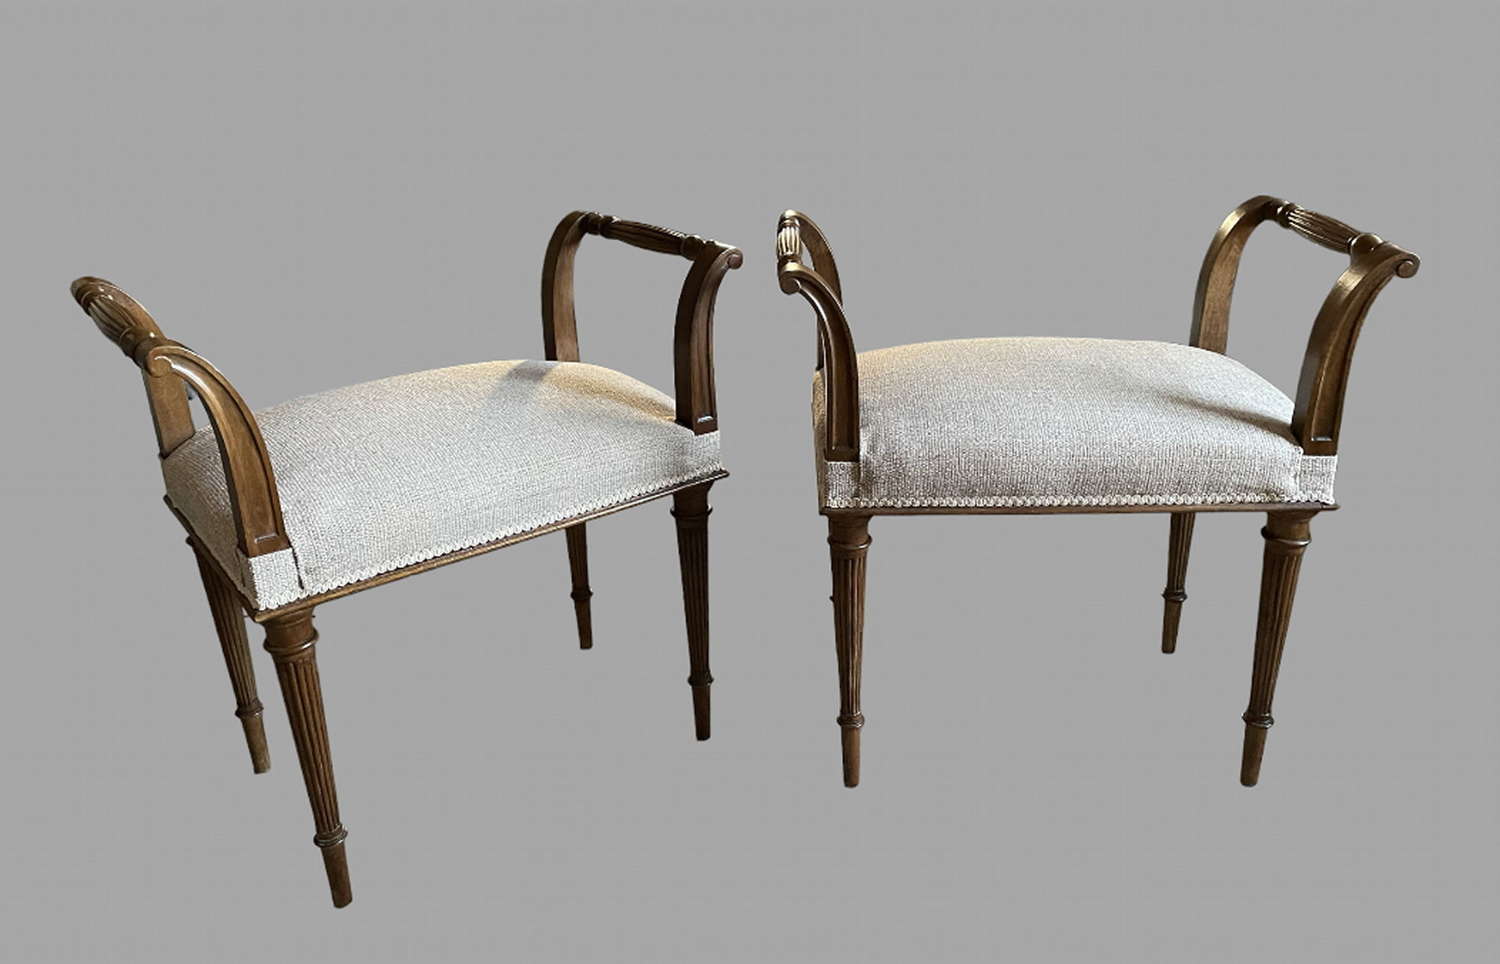 A Pair of 19thc Mahogany Window Seats